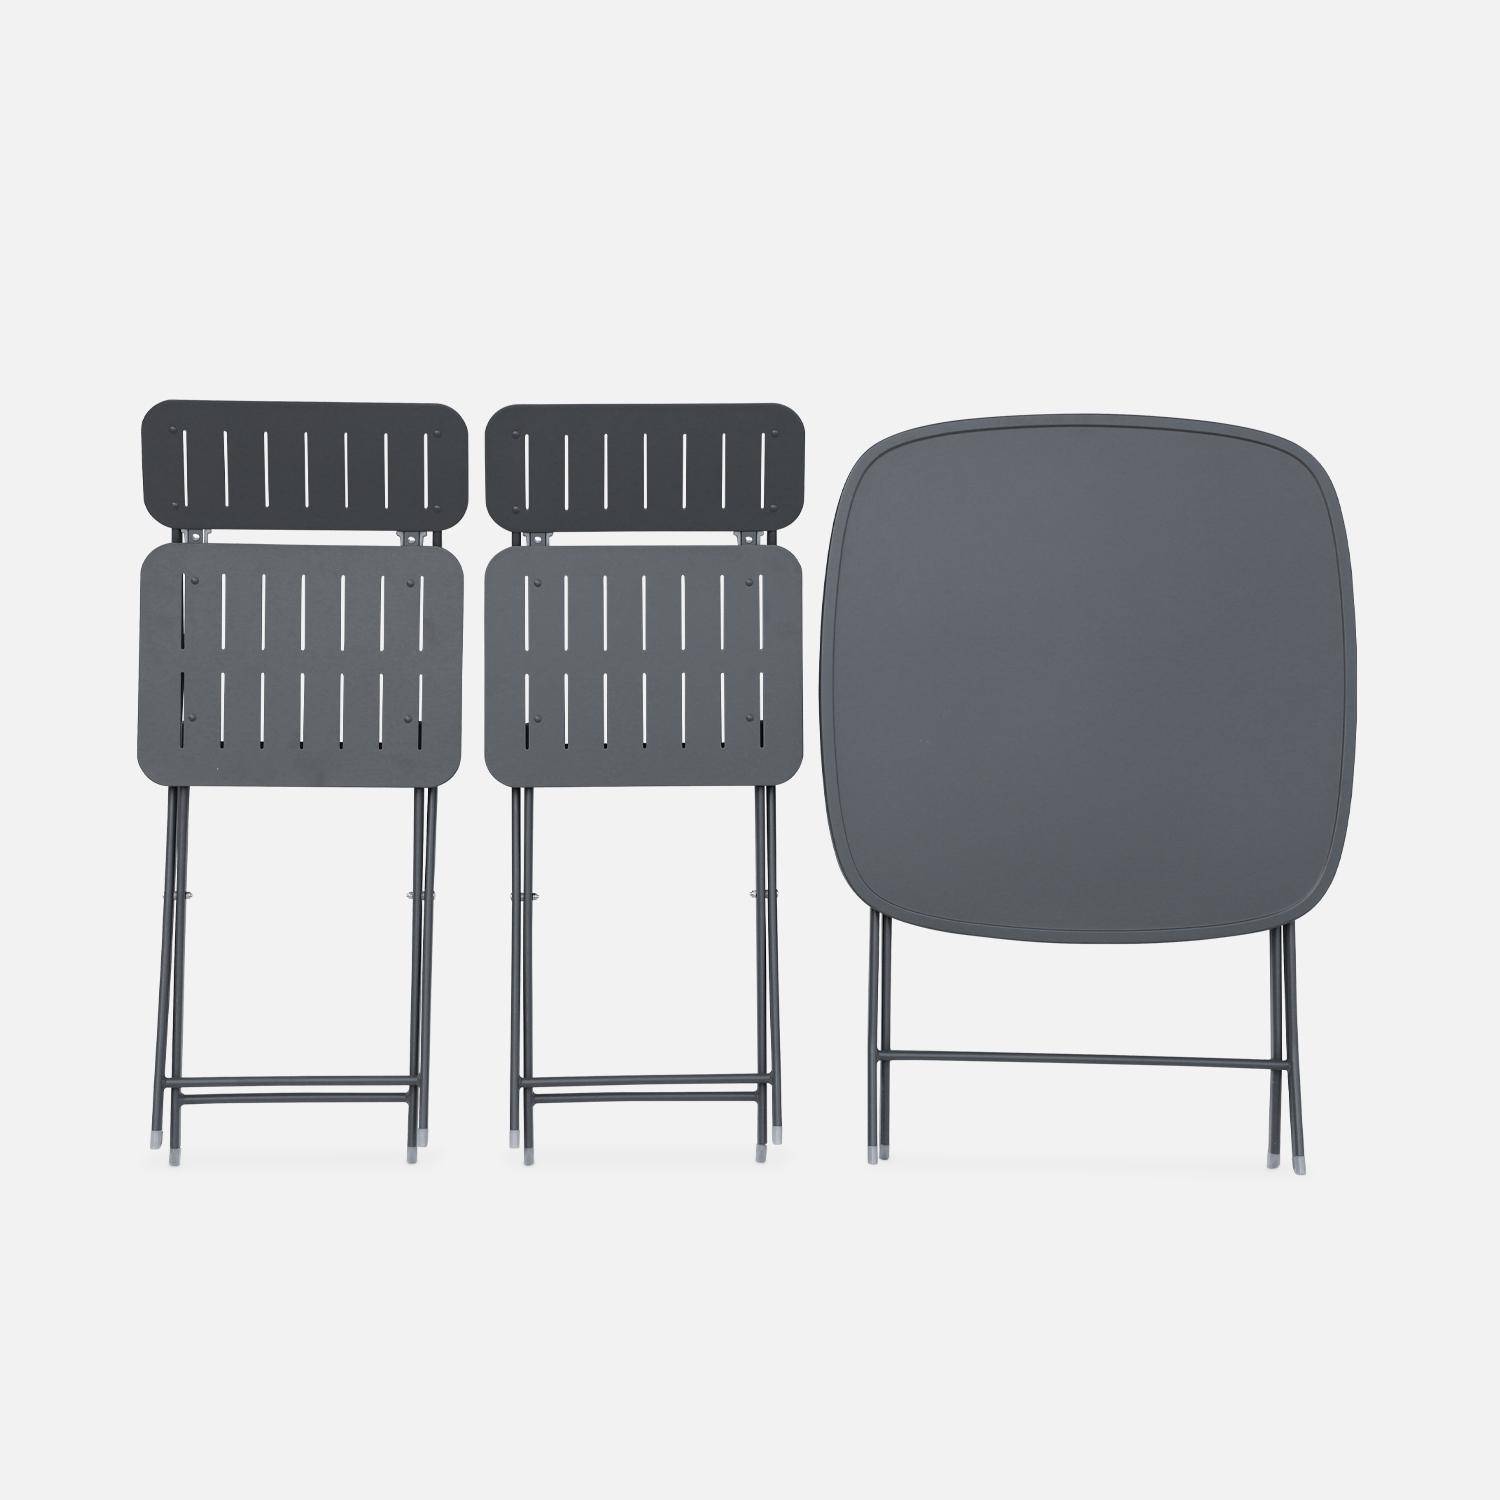 Mesa de jardín plegable estilo bistró en antracita con 2 sillas plegables de resistente acero galvanizado Photo6